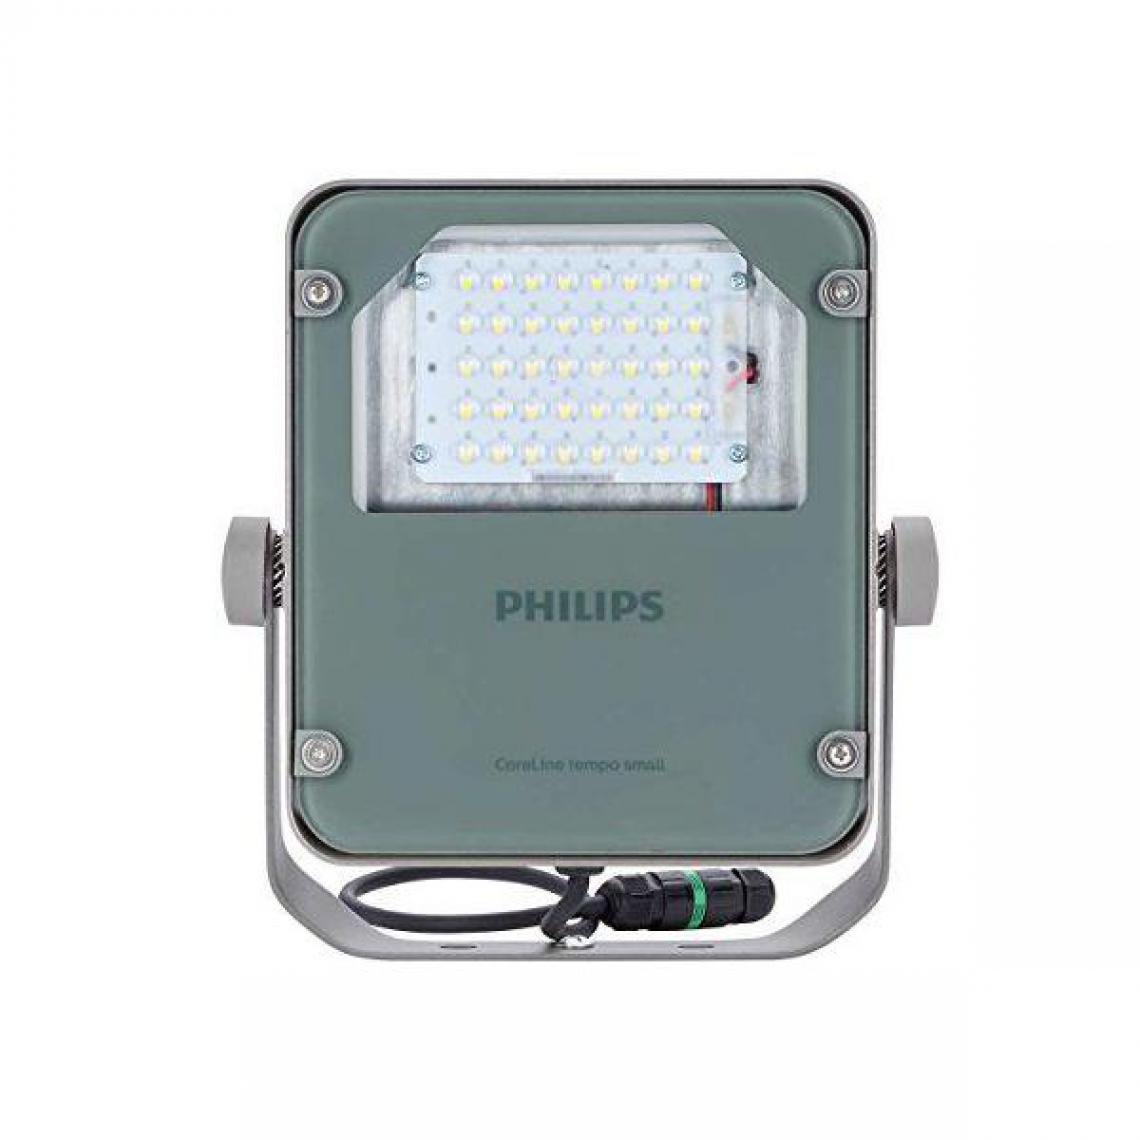 Philips - Philips BVP110 LED42/NW s 38 W lED aluminium, gris projecteur – Projecteur, 38 W, LED, aluminium, gris, LED, blanc neutre, 4000 K - Ampoules LED